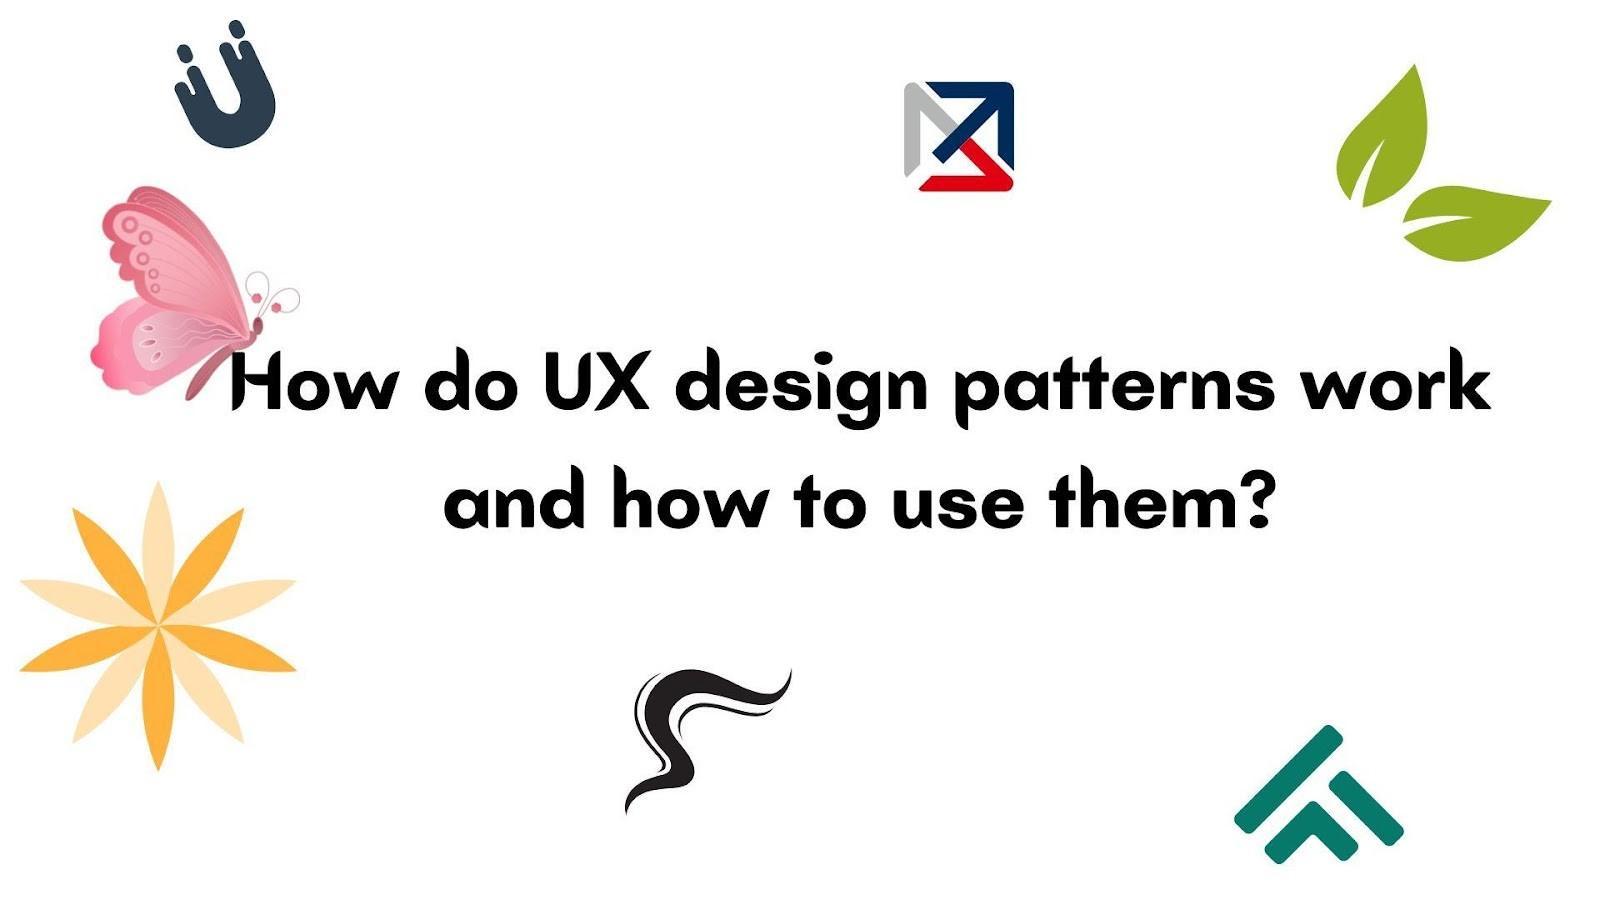 ux design patterns